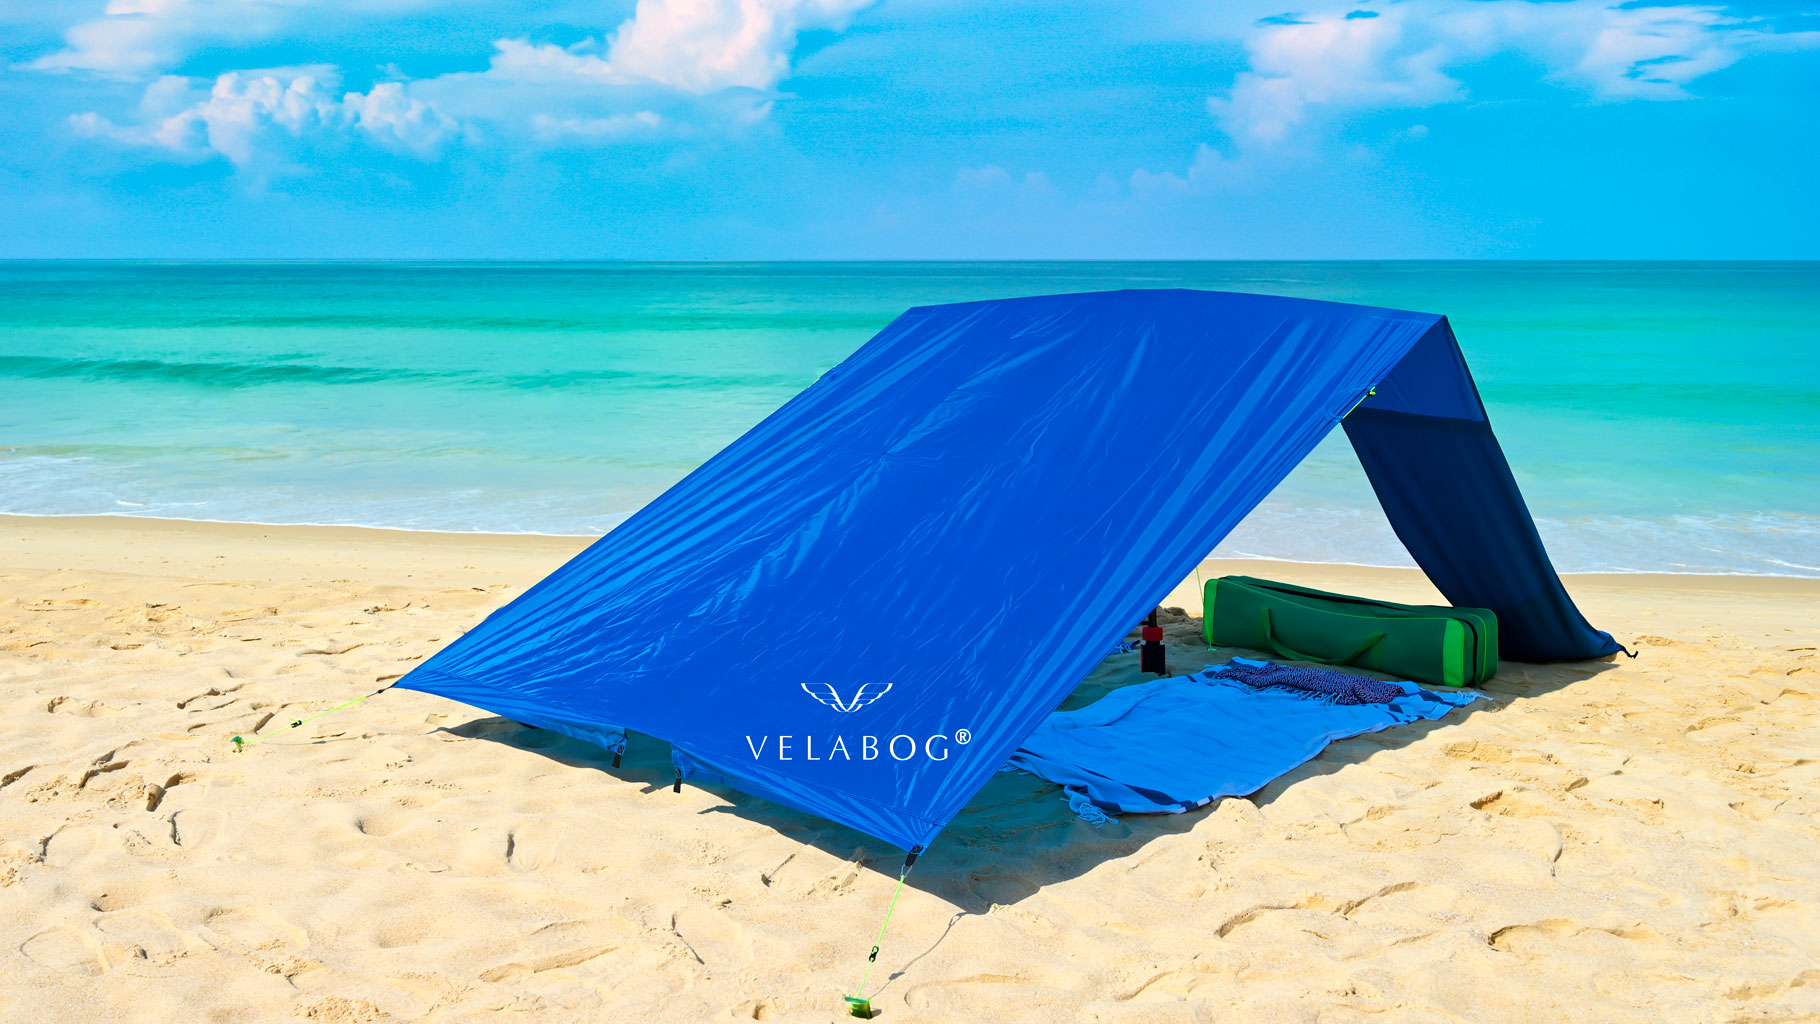 Żagiel słoneczny namiot plażowy Velabog Breeze, niebieski, na bezwietrznej plaży. Żagiel słoneczny, parasol plażowy i namiot plażowy w jednym. Może być również używany w warunkach bezwietrznych. Brak akumulacji ciepła. Bardzo duży i stabilny. Najlepsze zadaszenie na plażę. Widok od tyłu.